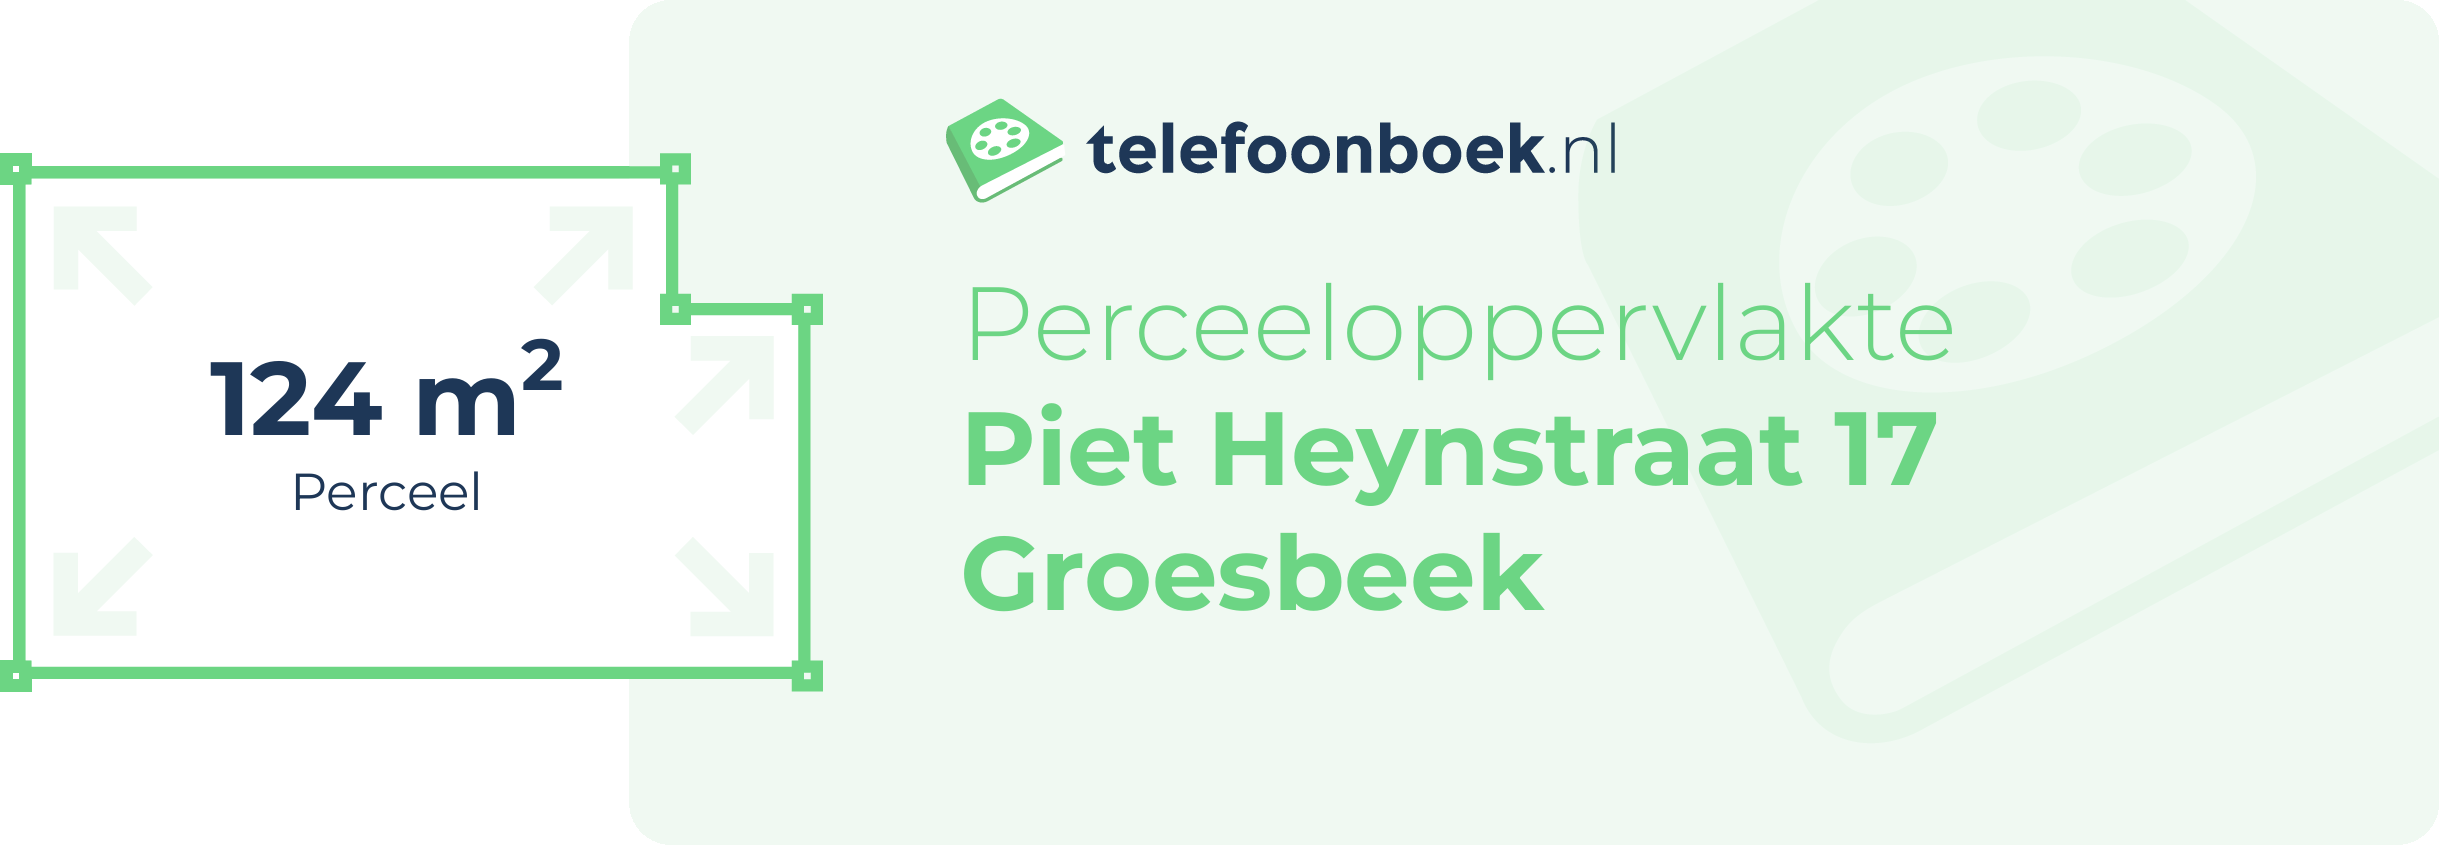 Perceeloppervlakte Piet Heynstraat 17 Groesbeek